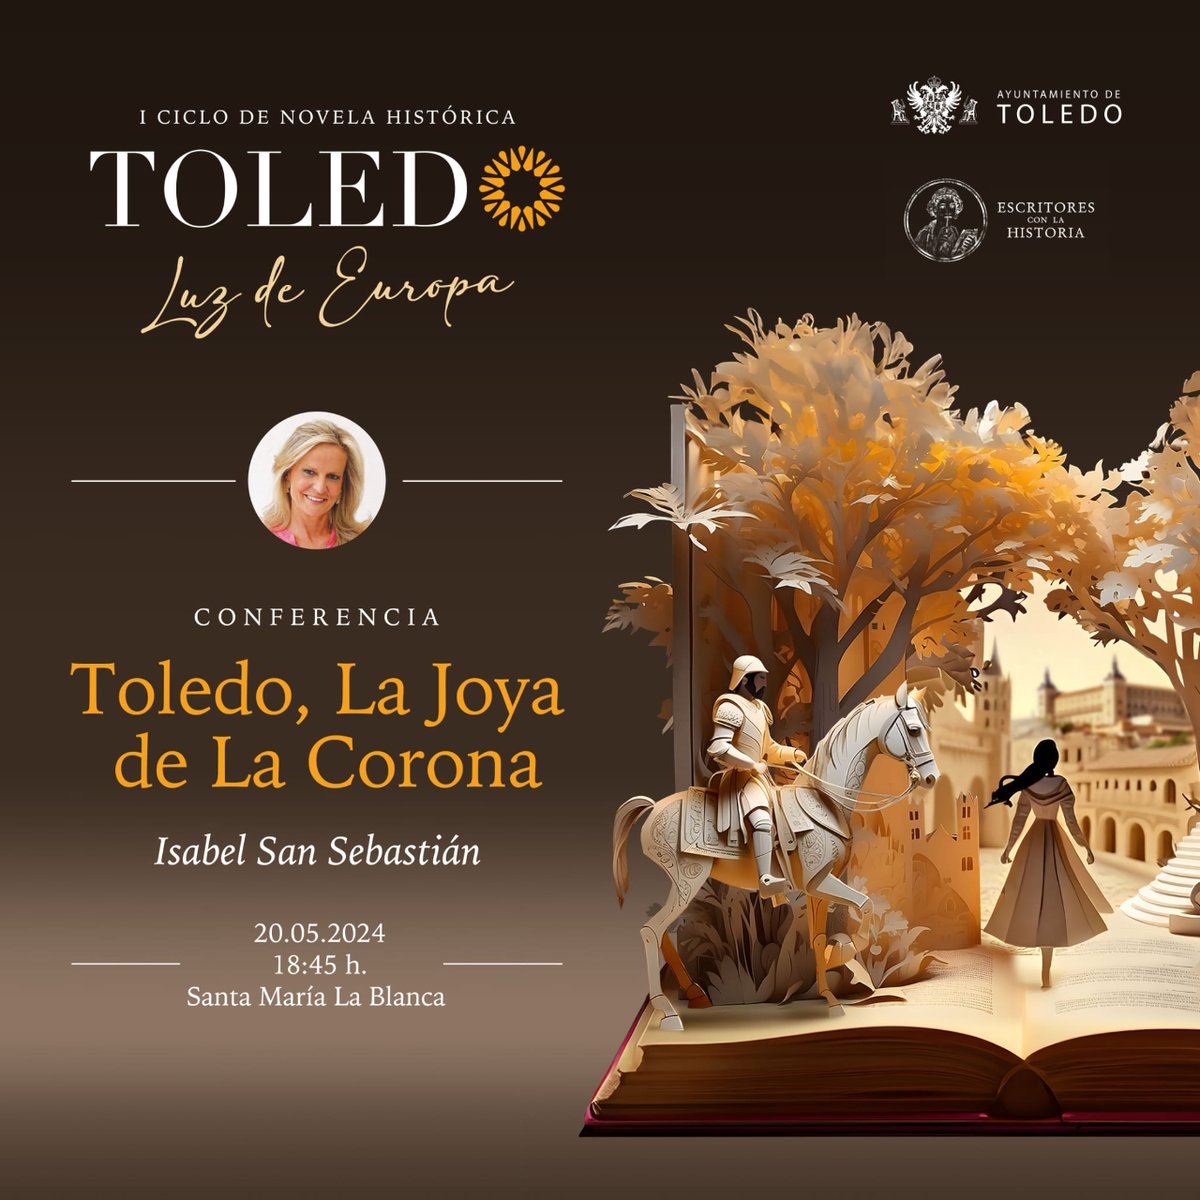 Vuelve el ciclo de conferencias: Toledo, Luz de Europa con Isabel San Sebastián (@isanseba) .  🖊️Toledo, La Joya de la Corona  🗓️ 20/05 🕛 18:45. 📍 Santa María la Blanca.